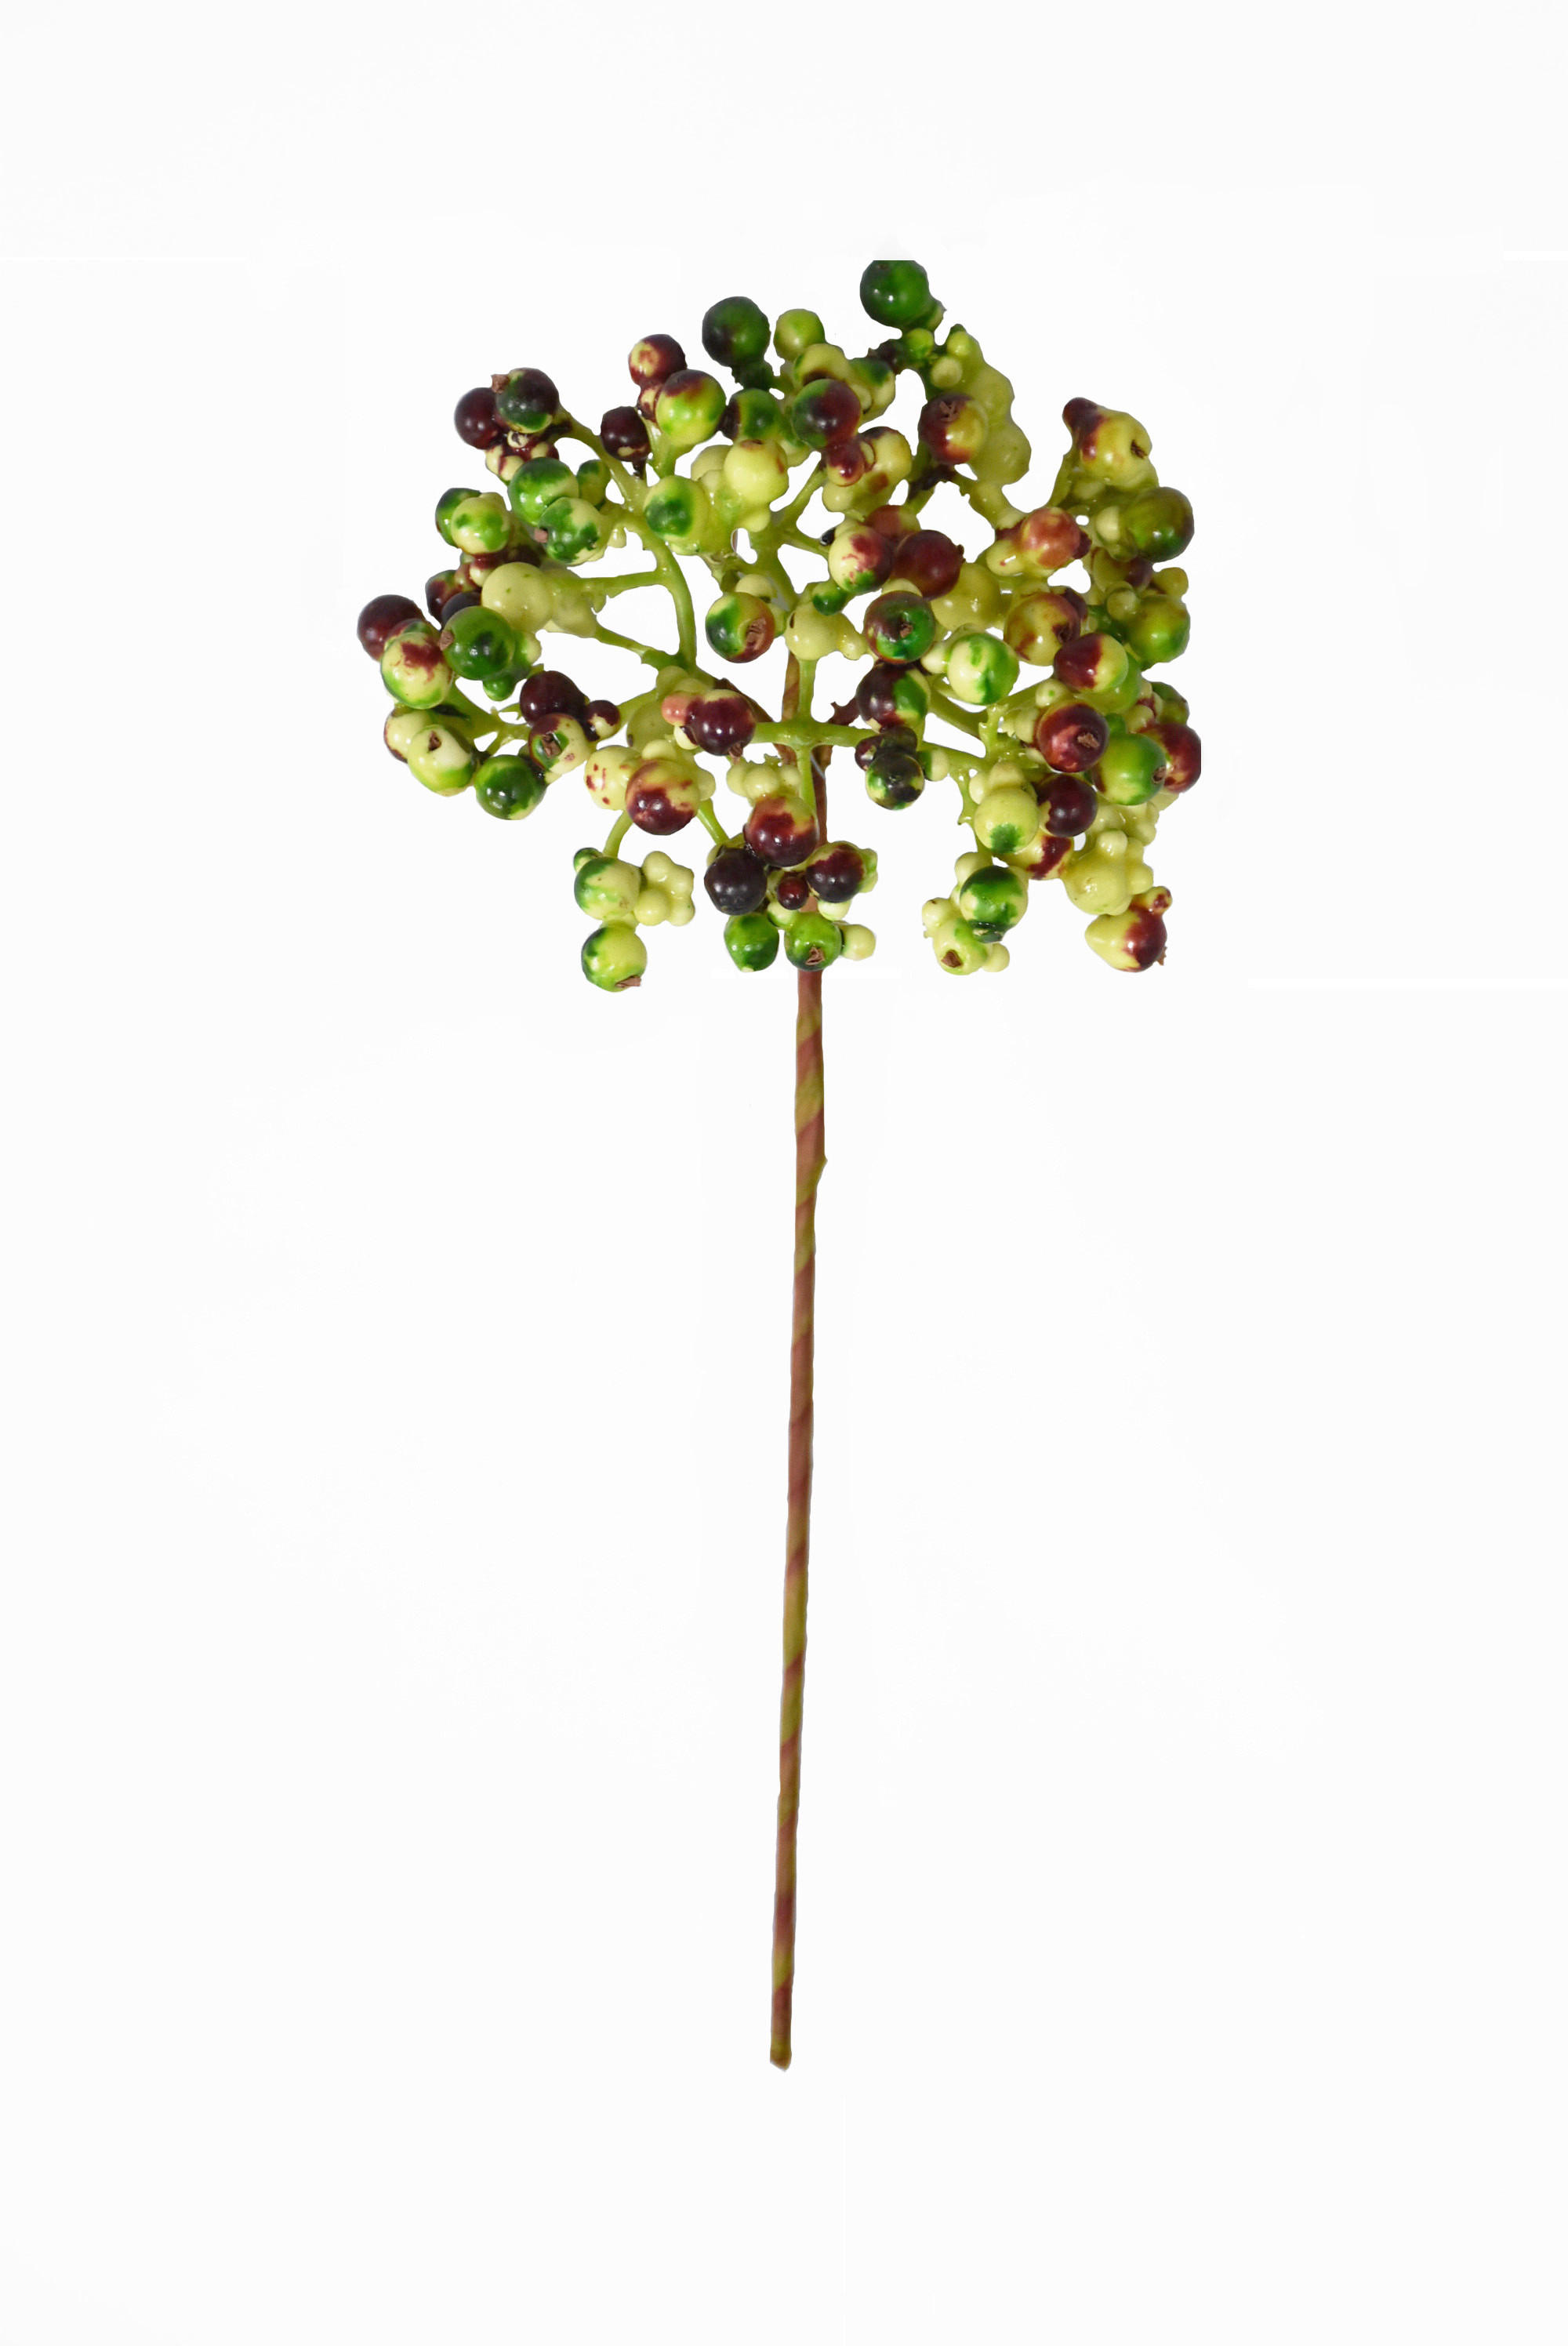 DEKORAČNÍ VĚTVIČKA 30 cm - zelená,červená